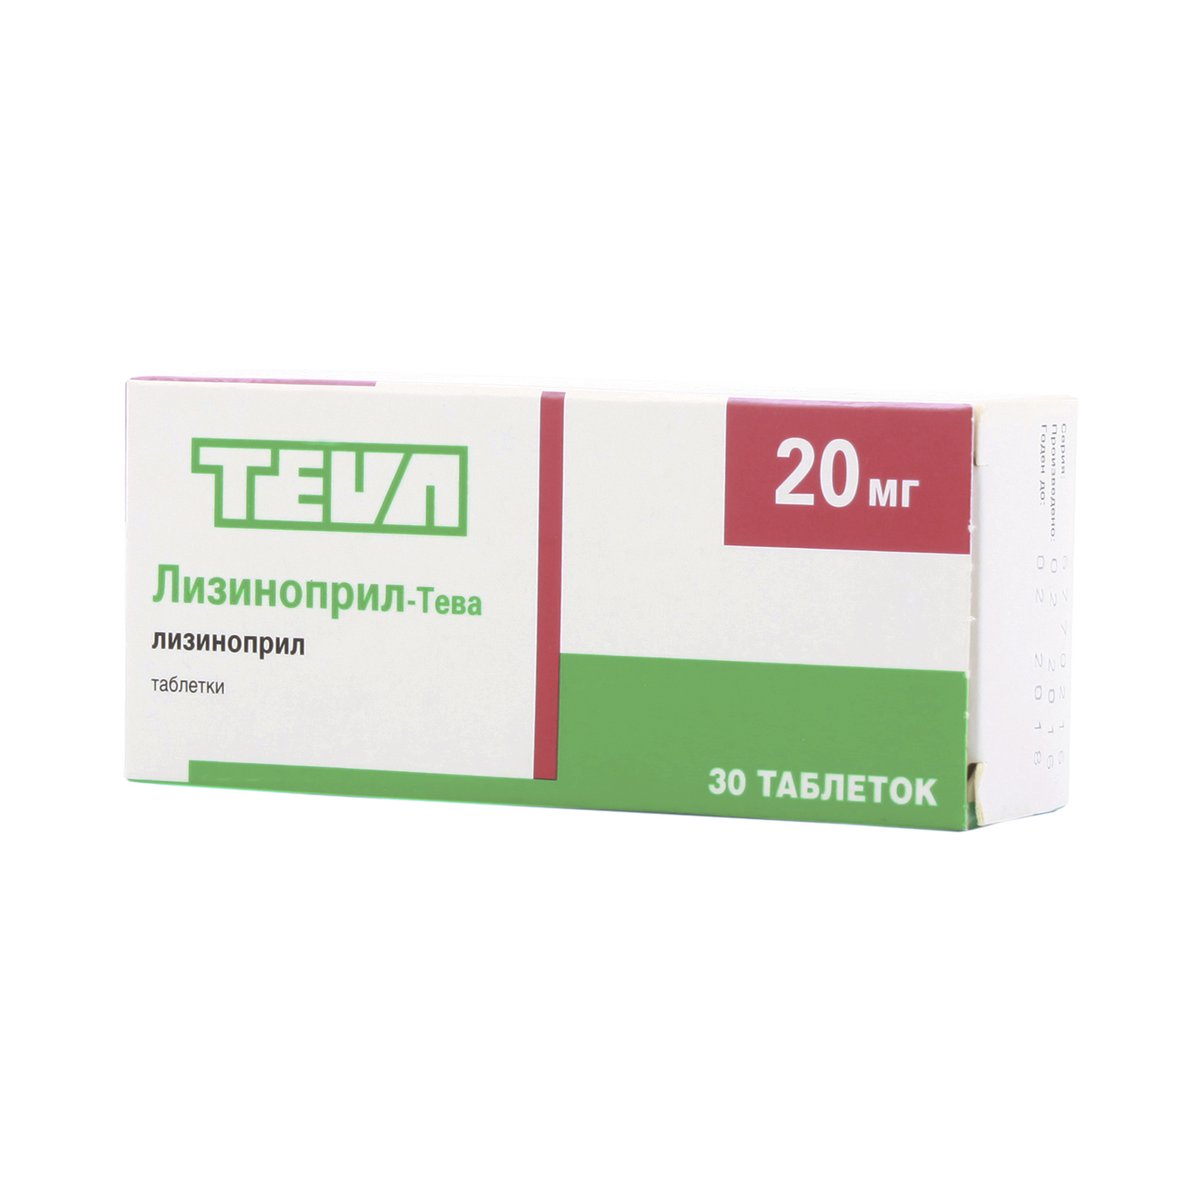 Лизиноприл-Тева (таблетки, 30 шт, 20 мг, для приема внутрь) - цена .